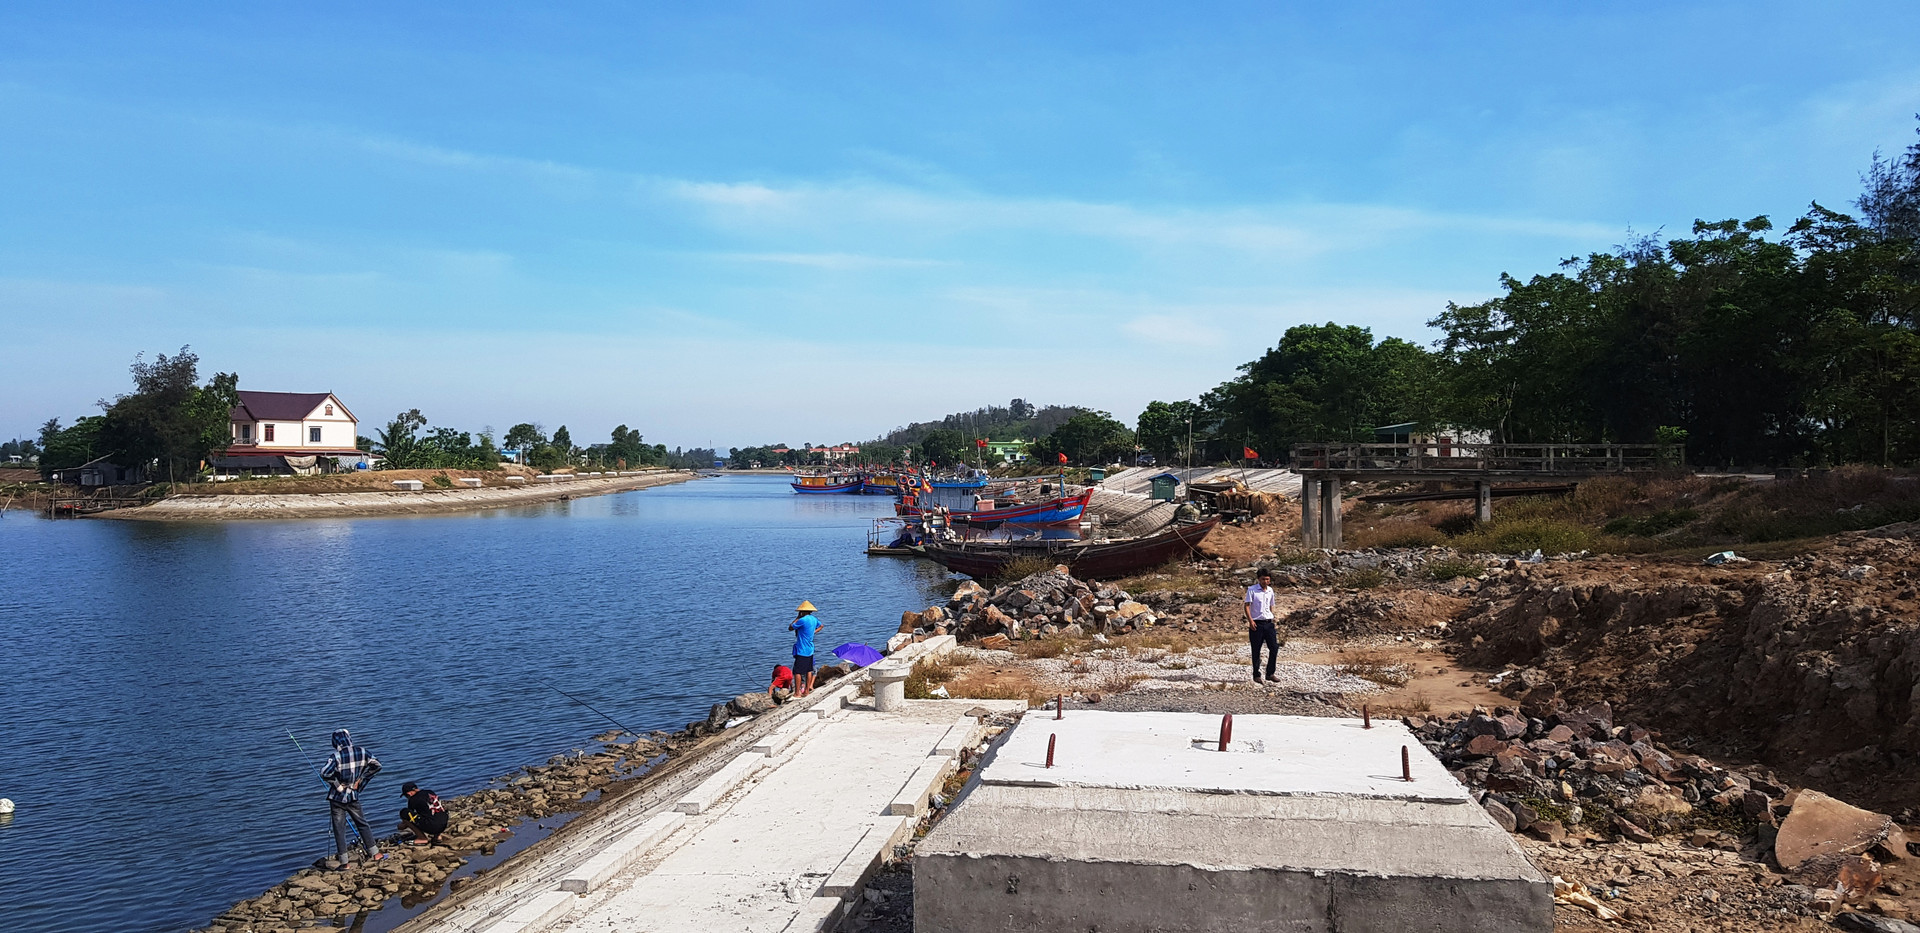 Dự án khu neo đậu tránh bão cho tàu, thuyền nghề cá sông Lý chậm tiến độ đang gây ra nhiều khó khăn cho đời sống của người dân xã Quảng Thạch.